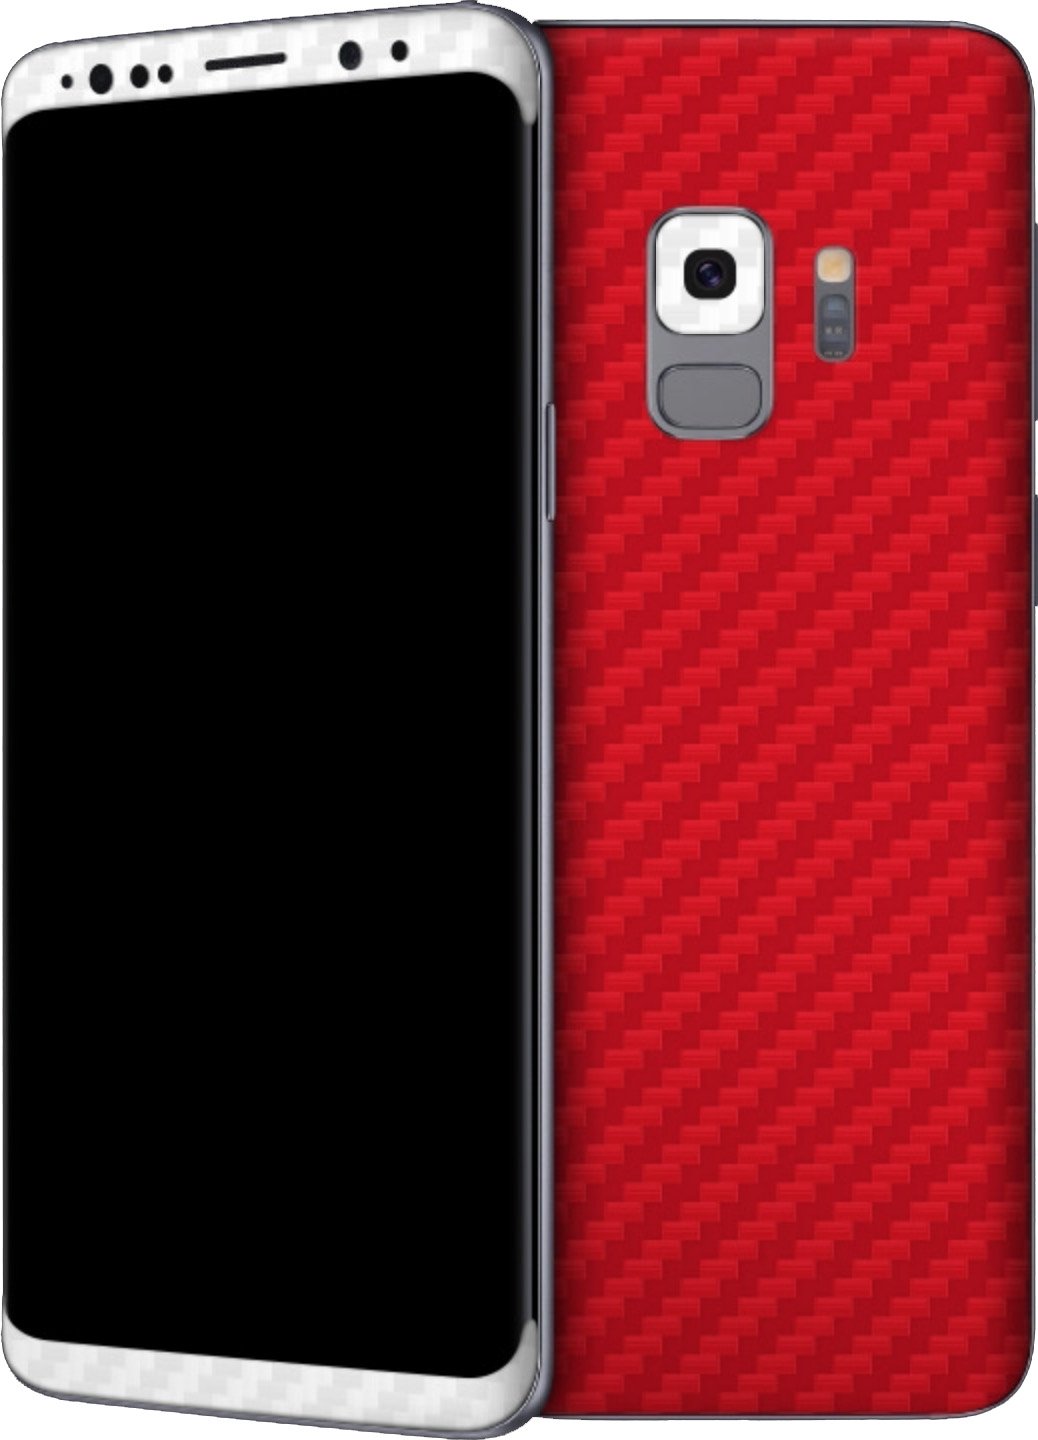 galería de fondos de pantalla de android central,caja del teléfono móvil,teléfono móvil,artilugio,rojo,negro